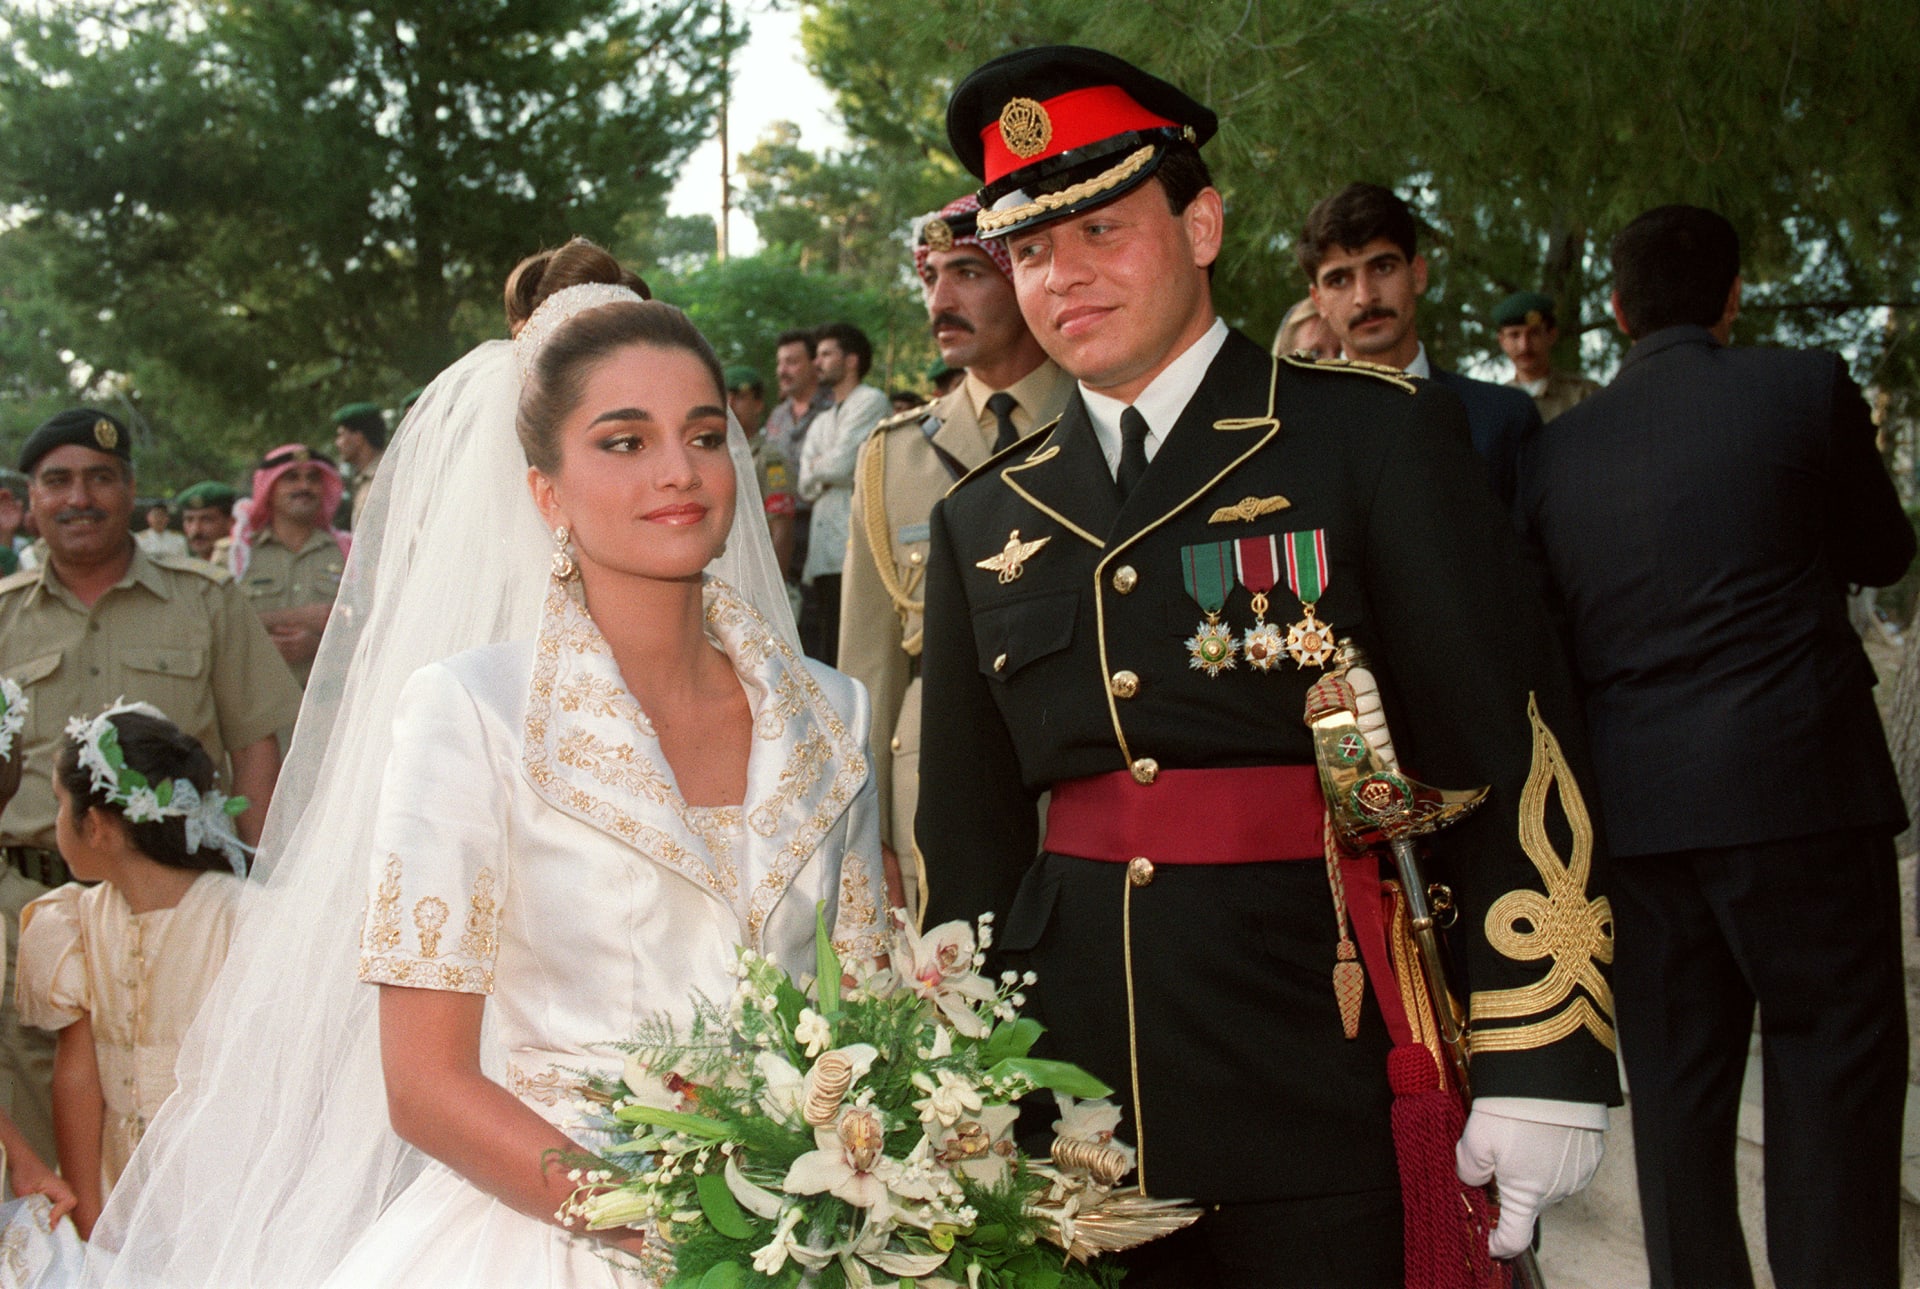 الملكة رانيا بصور قديمة وحديثة في عيد ميلادها الـ52